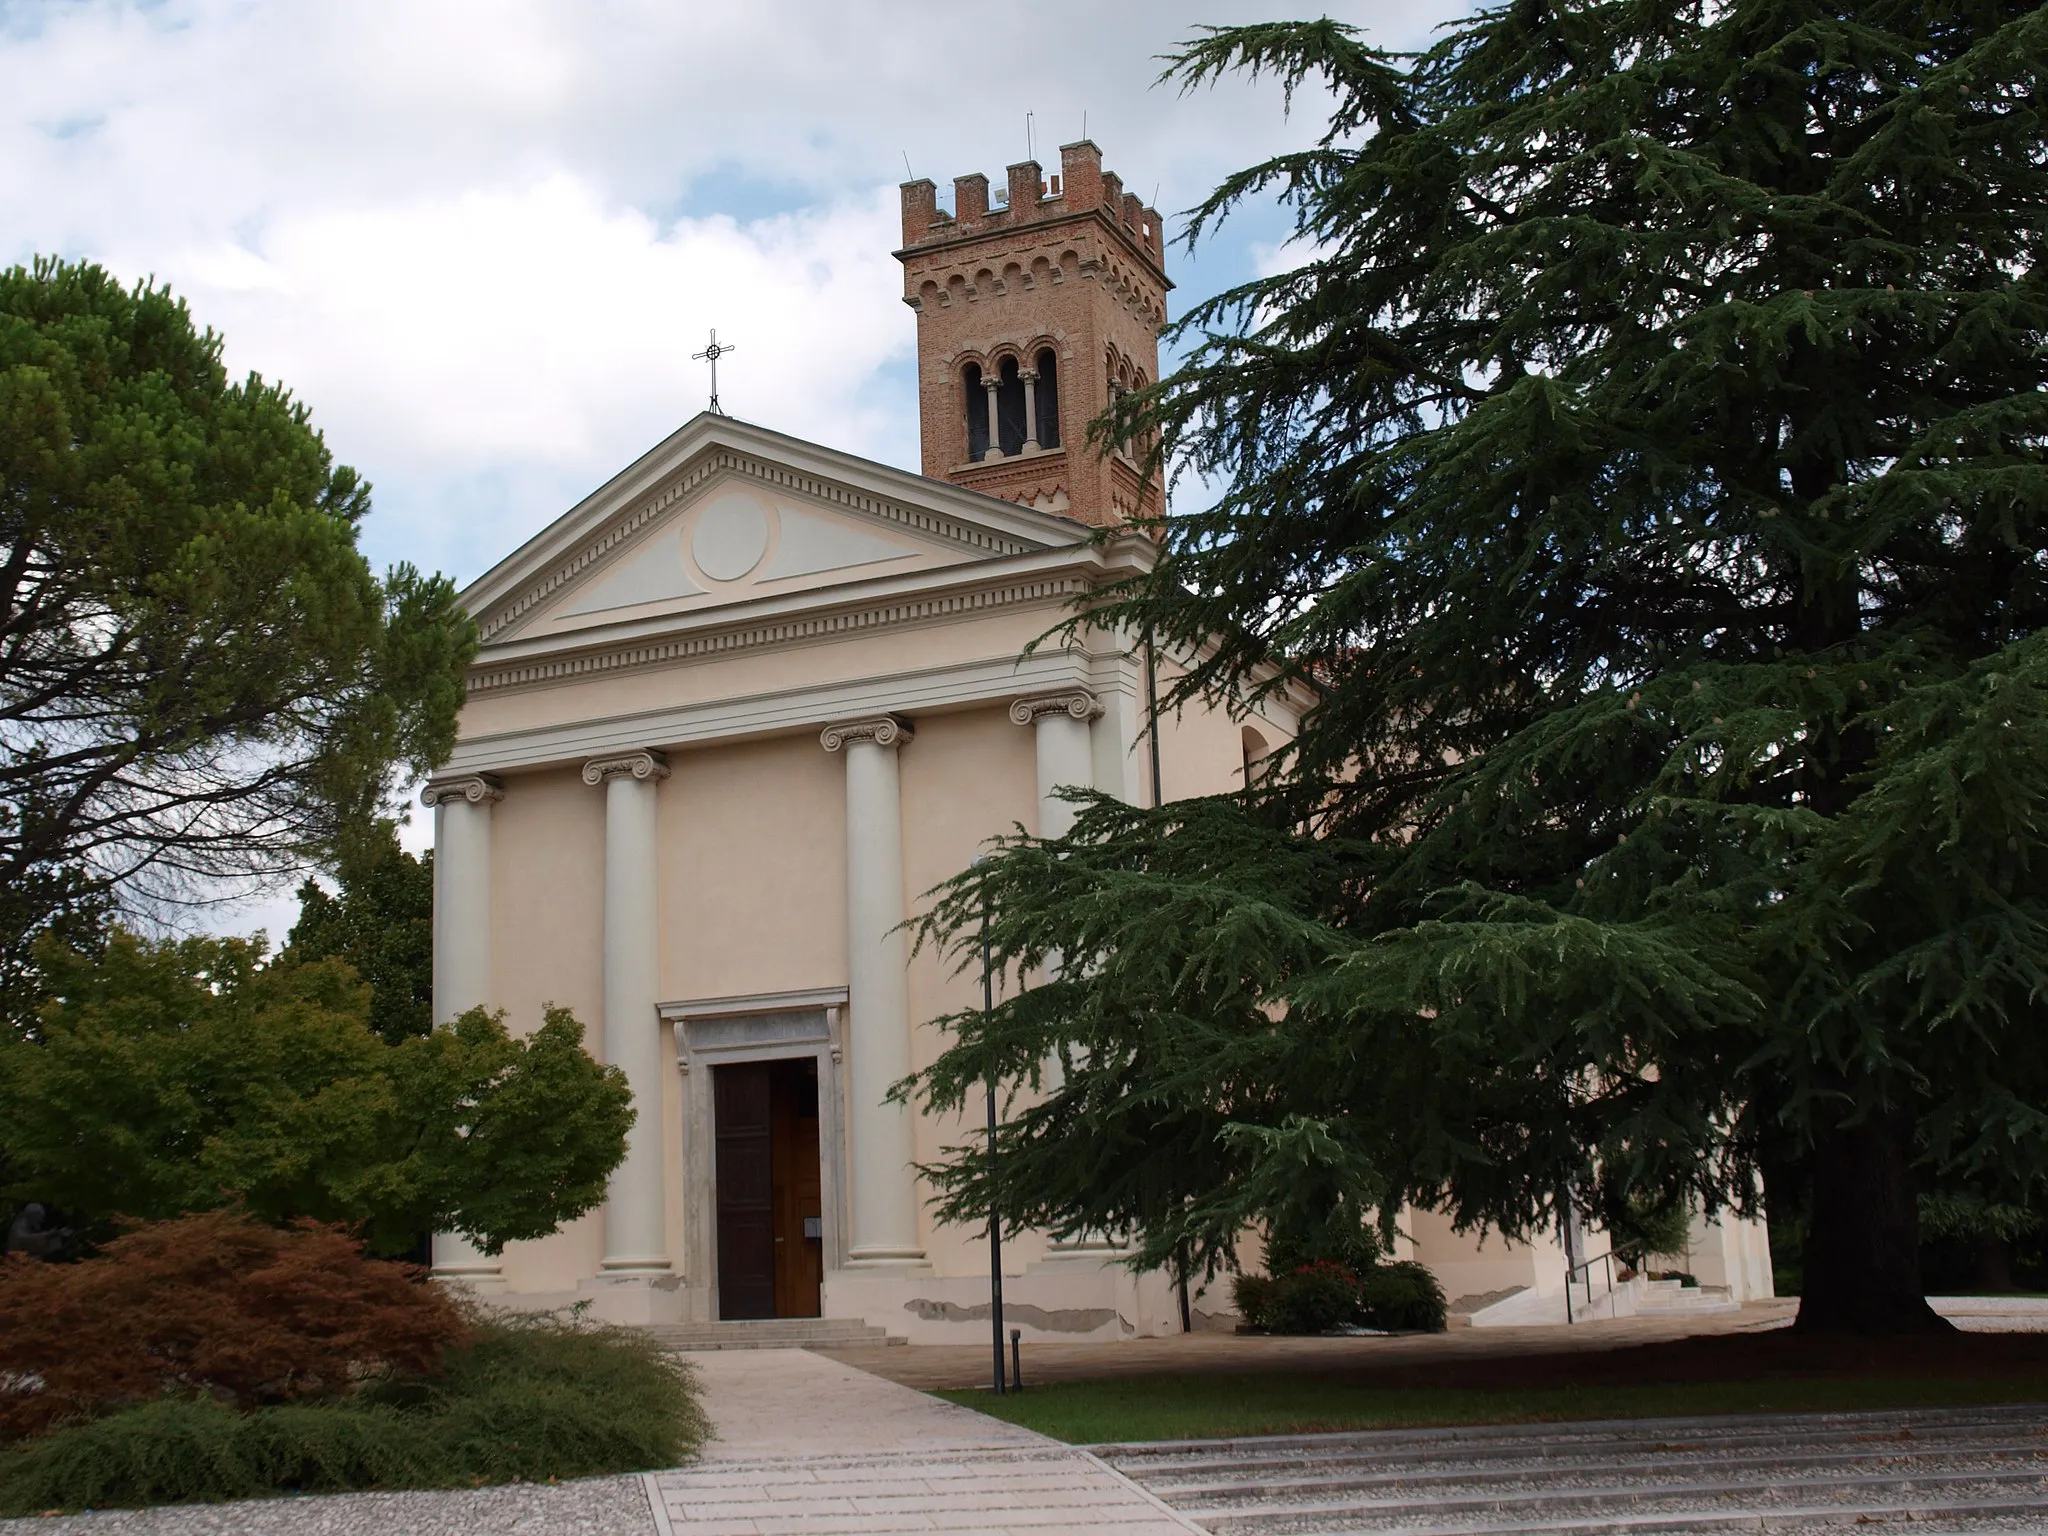 Photo showing: The chiesa di Santa Lucia (saint Lucy church) in Prata di Pordenone, in Northeast Italy.